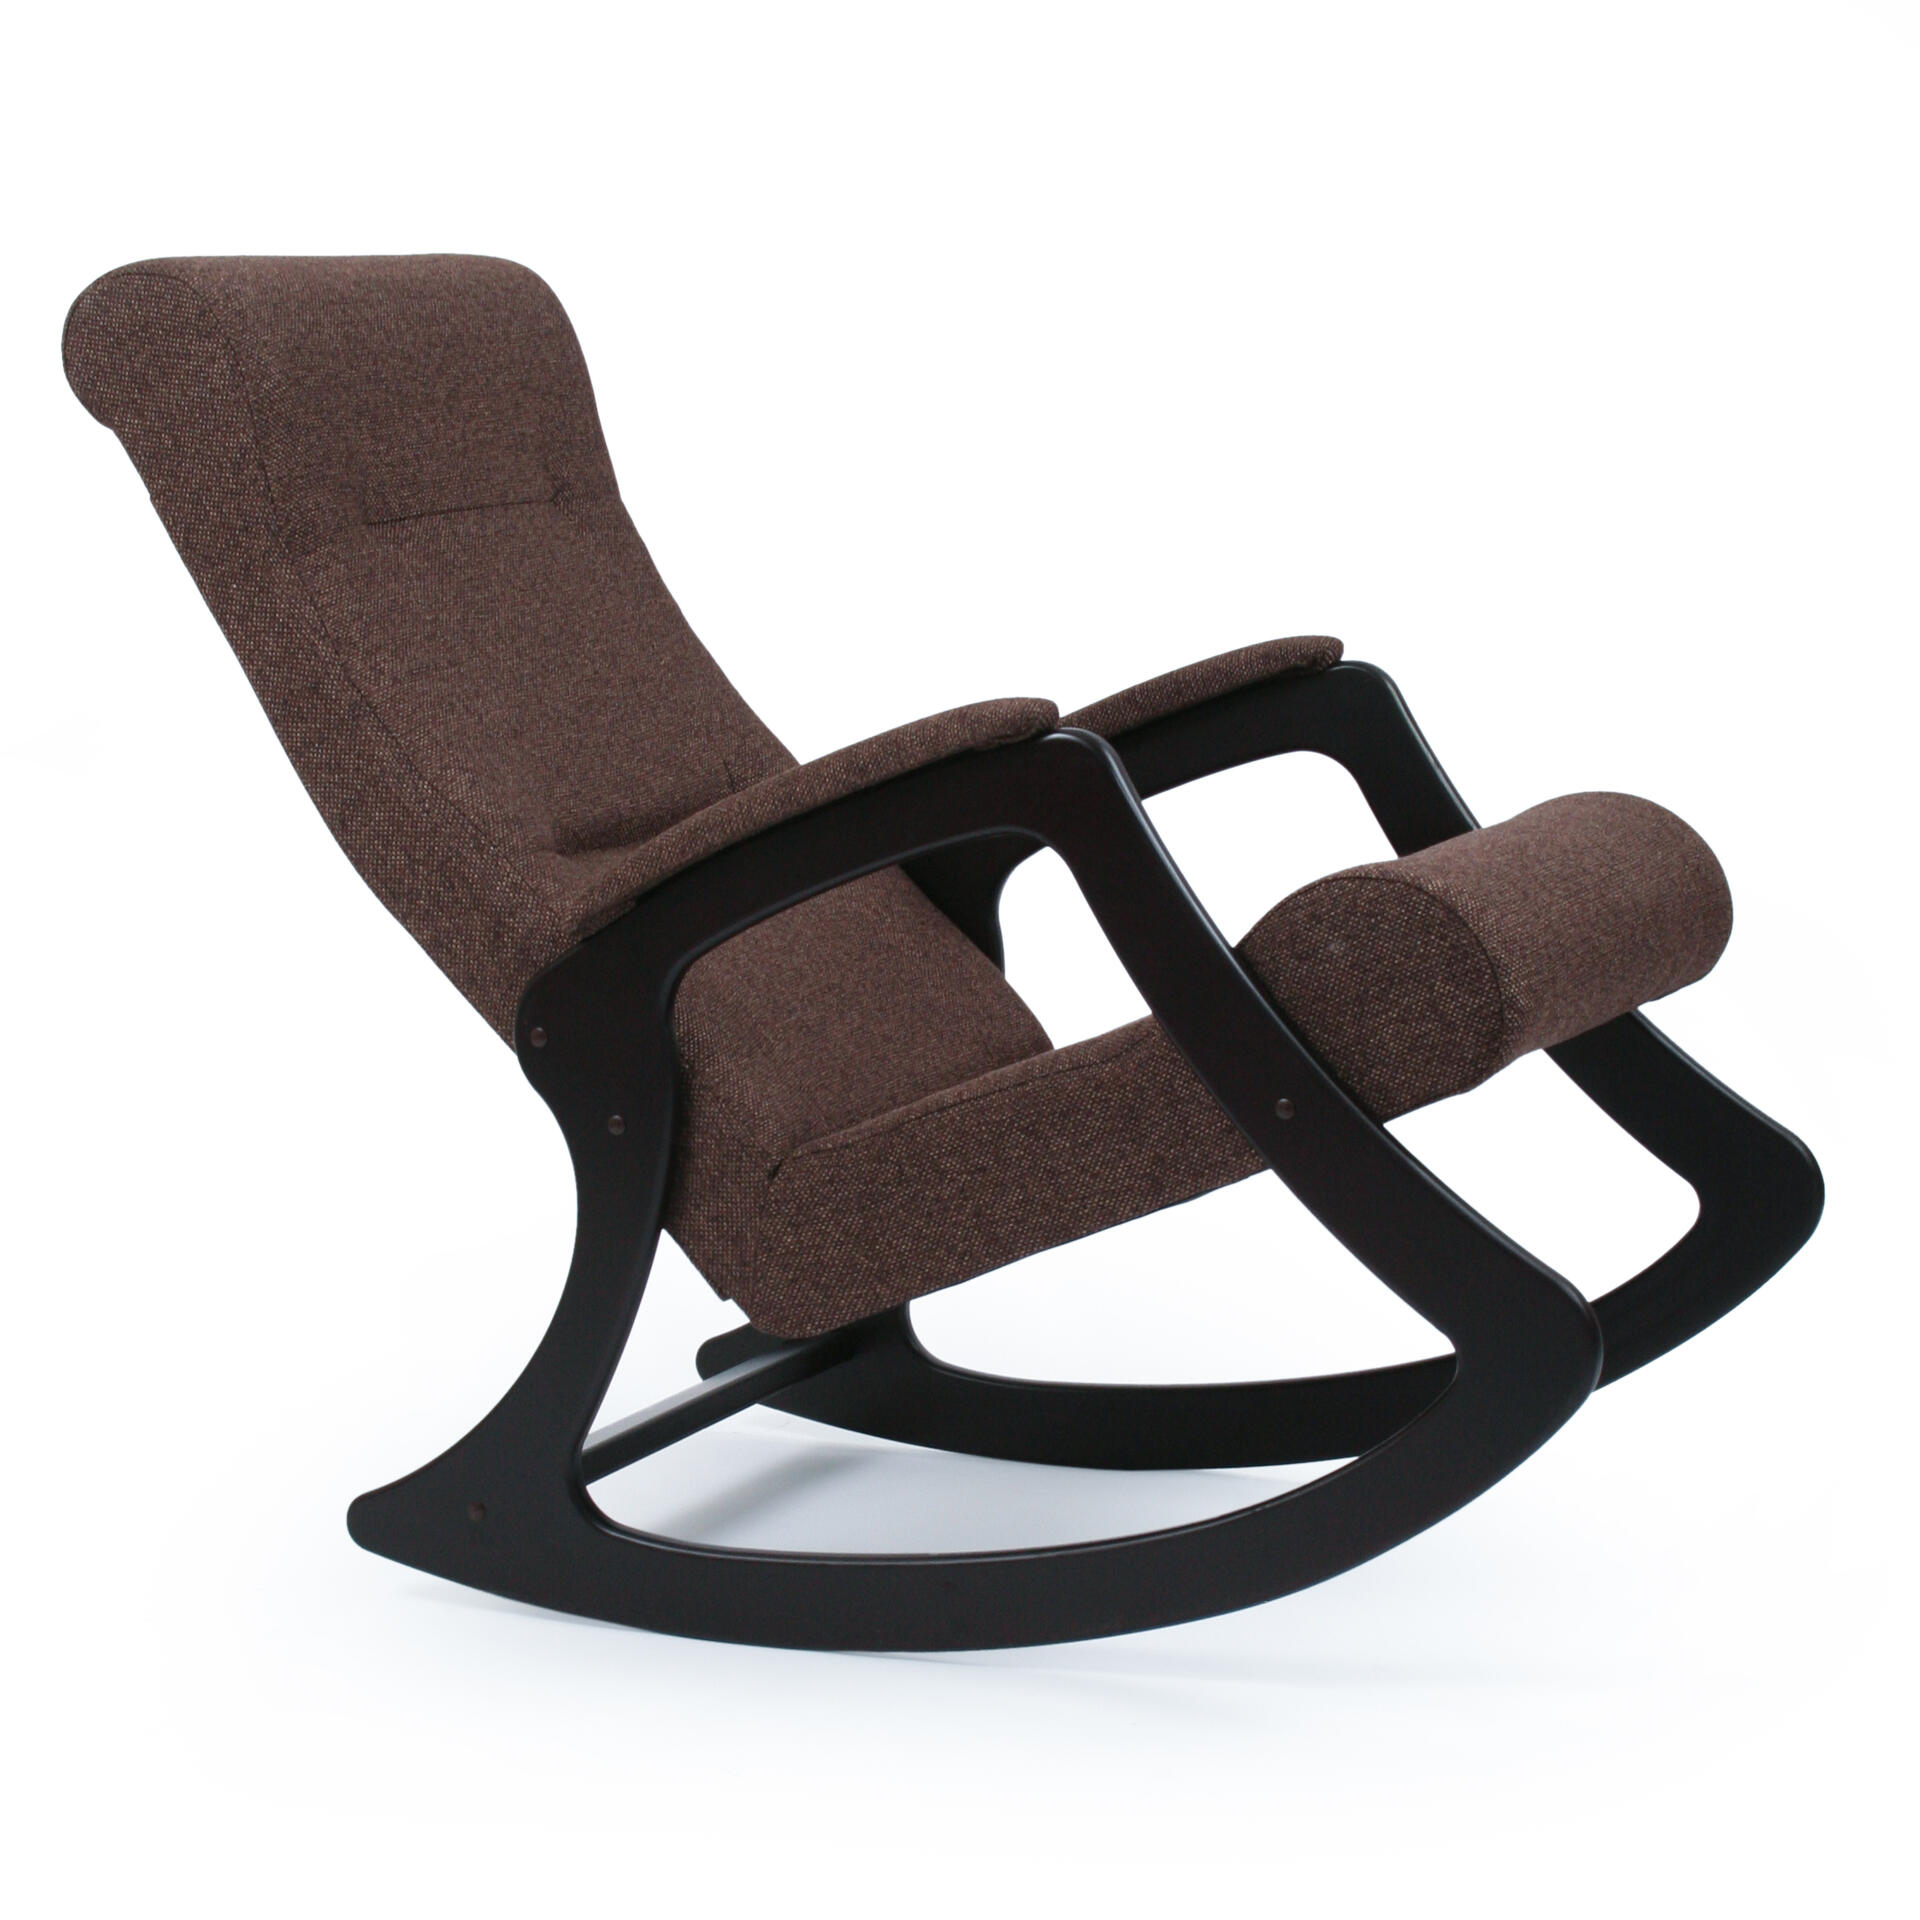 мягкие кресла качалки для внутреннего интерьера